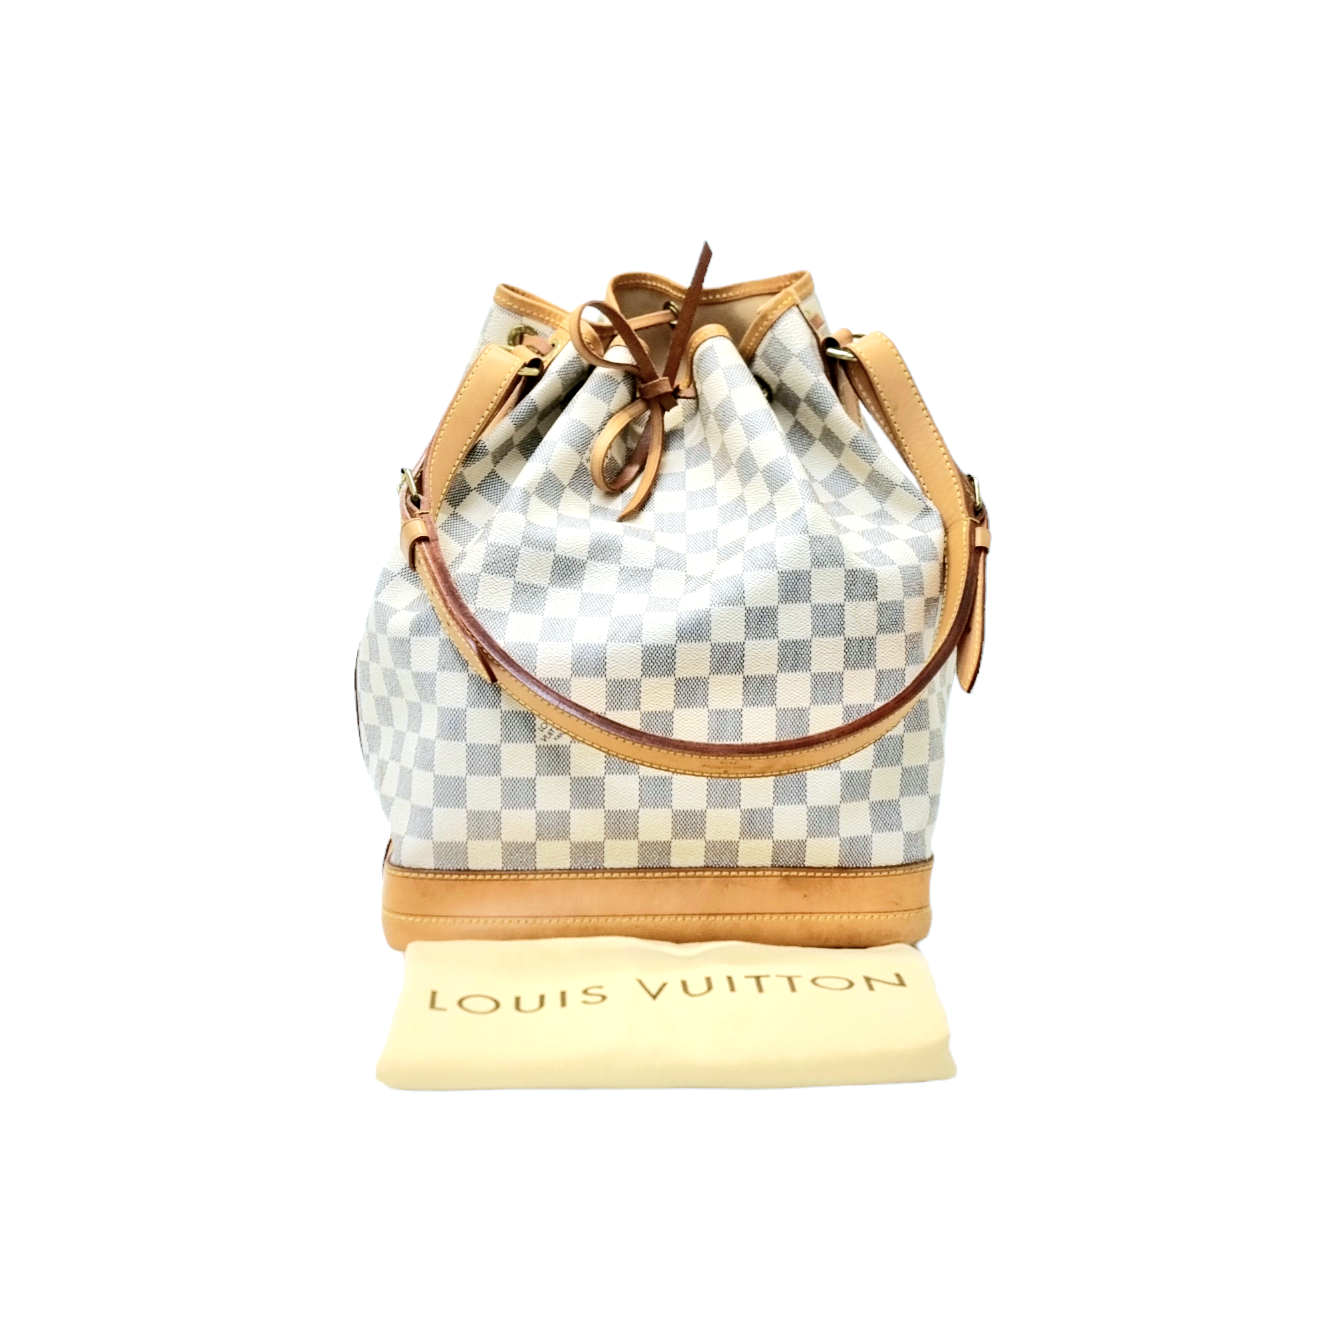 LOUIS VUITTON Damier Azur Large Noe Shoulder Bag